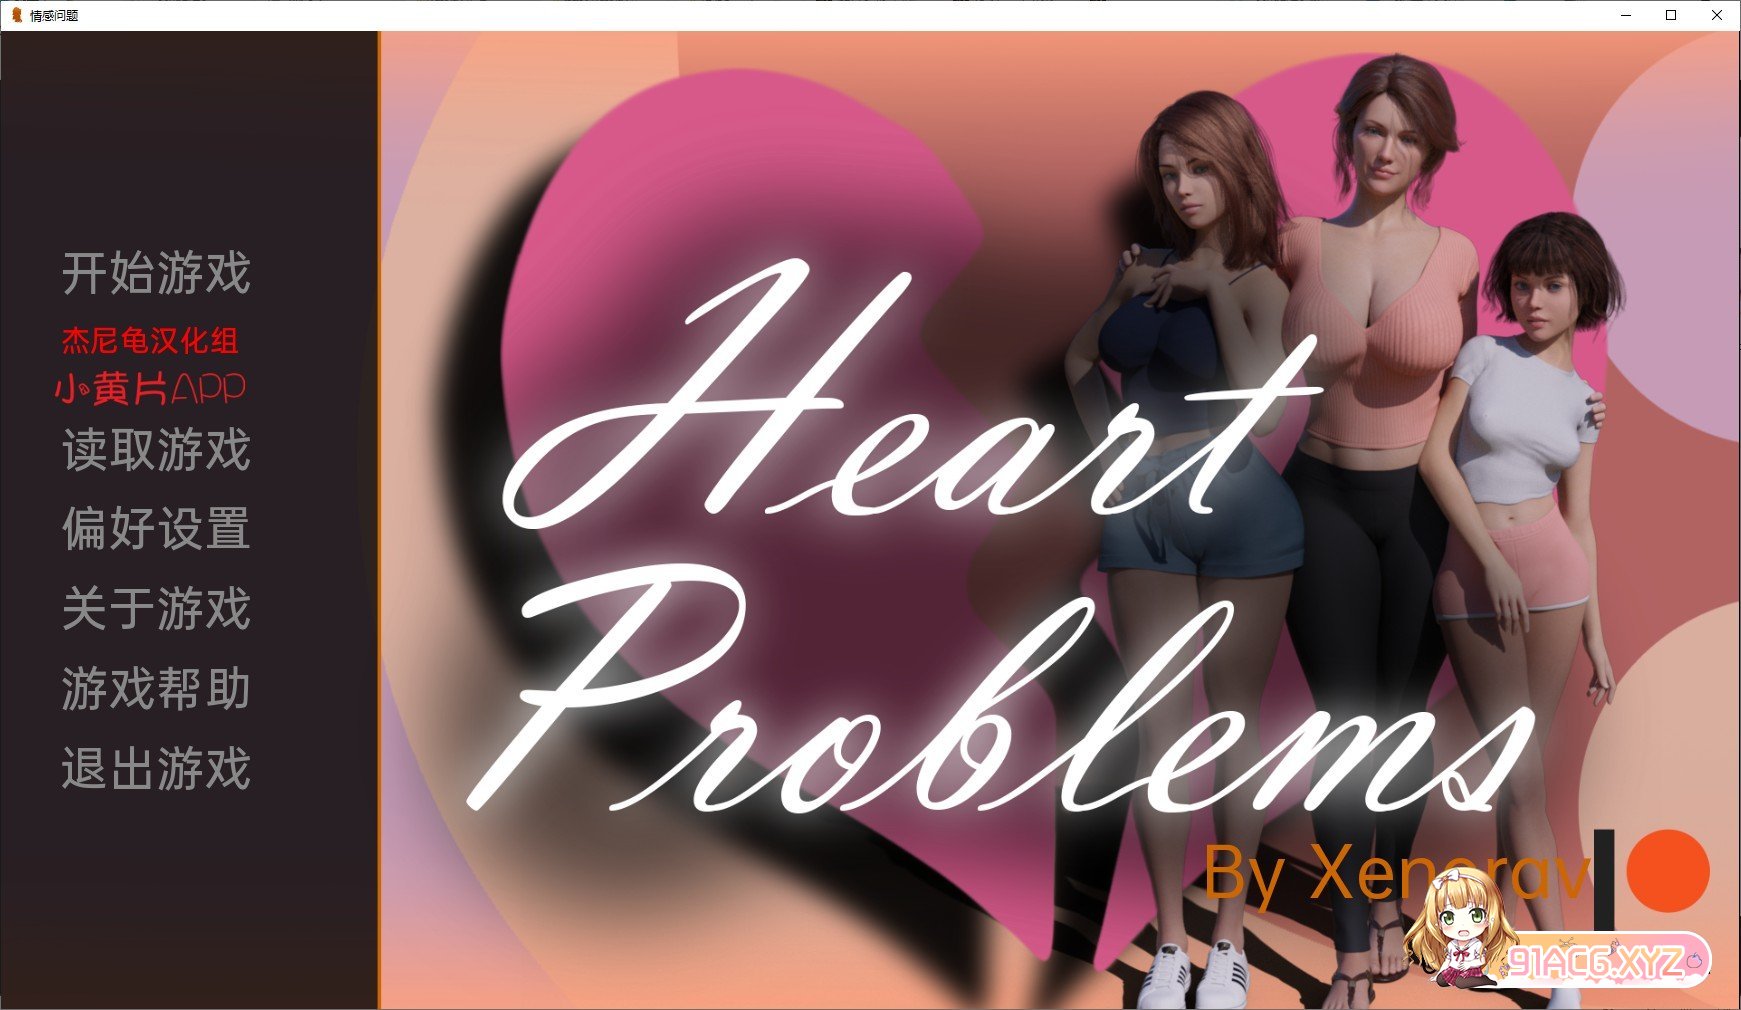 [欧美SLG/汉化/动态]情感问题Heart Problems-V0.6精翻汉化版 - Galgame社区 - 里世界 - 危门 Vvvv.Men